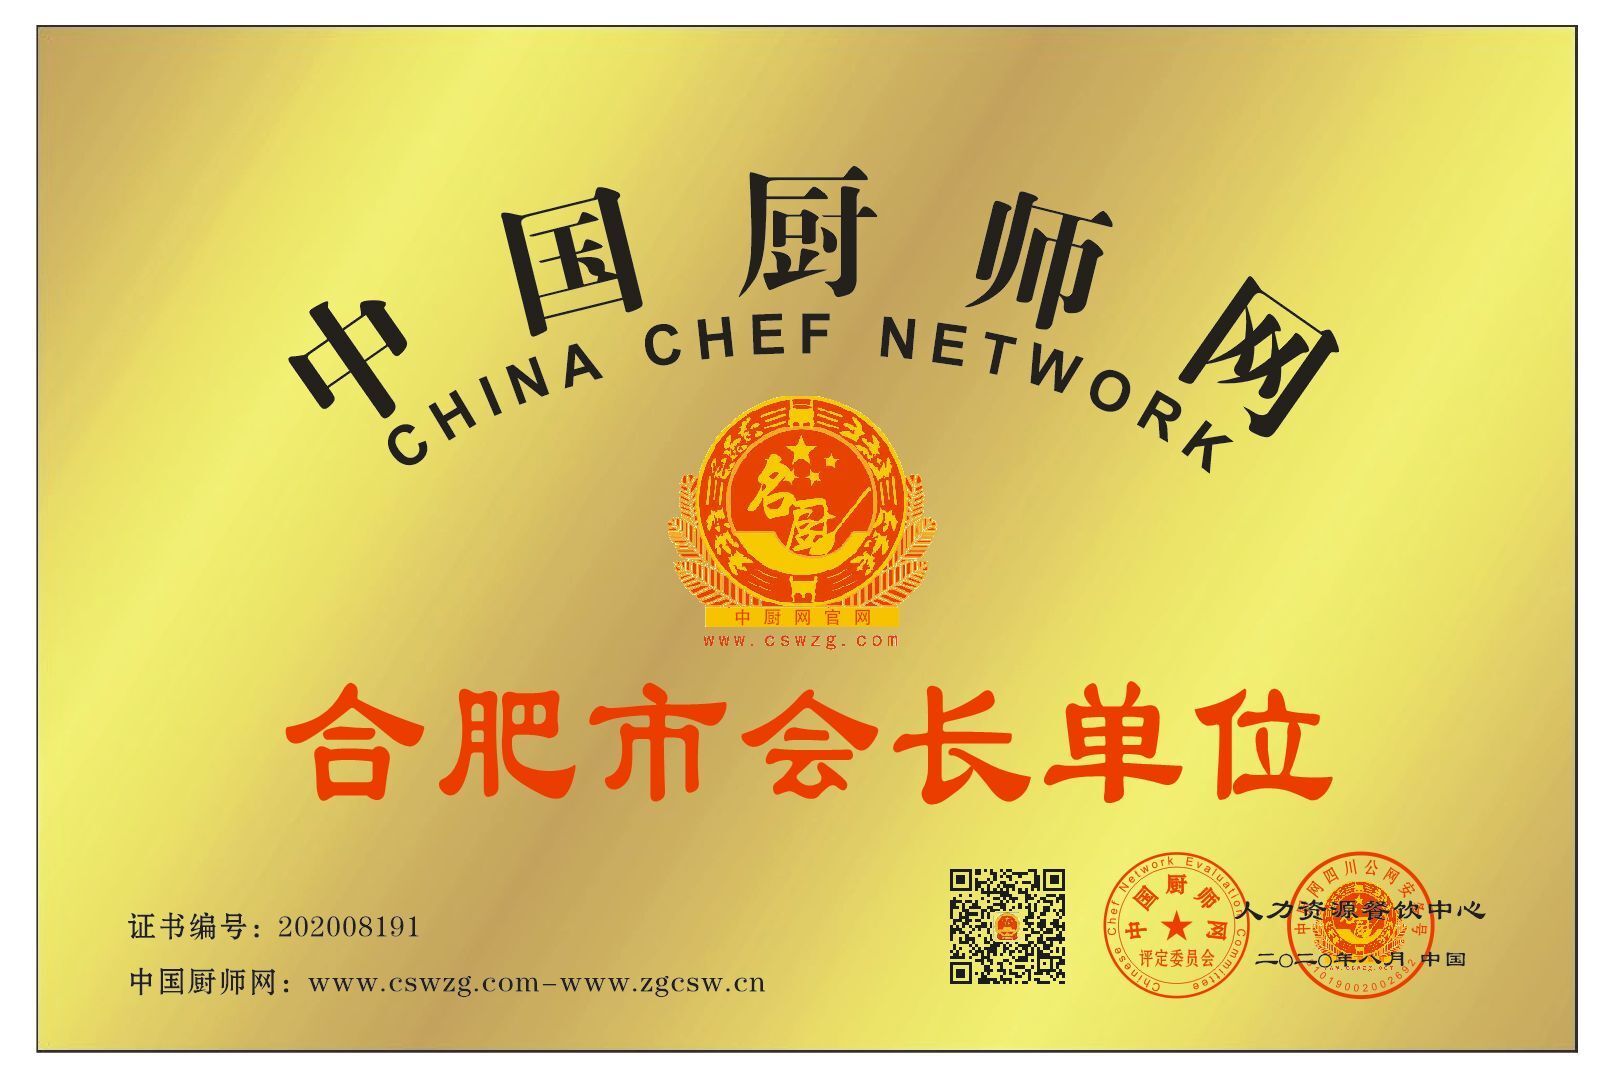 中国厨师网合肥市会长单位 